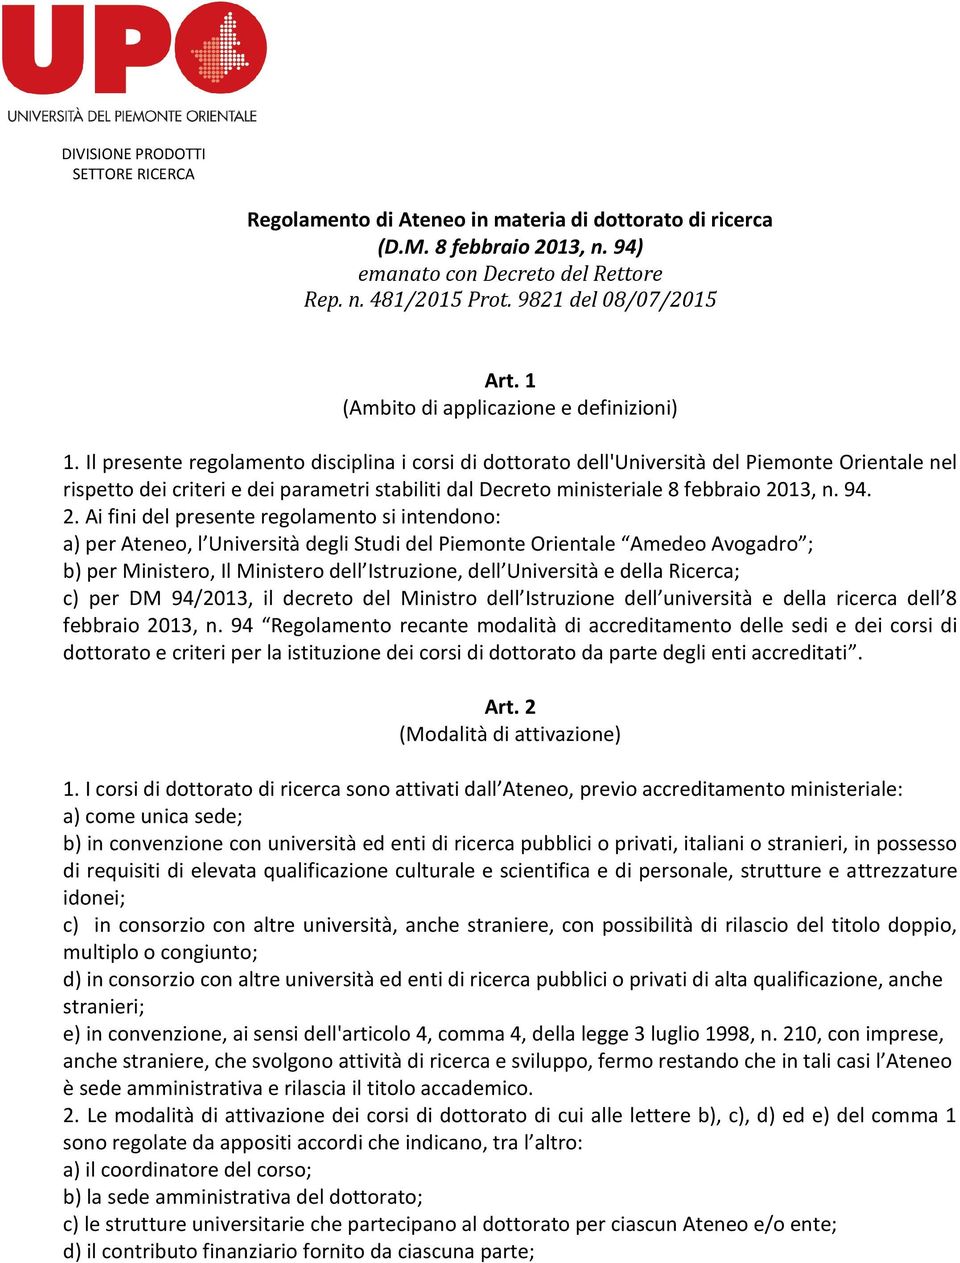 Il presente regolamento disciplina i corsi di dottorato dell'università del Piemonte Orientale nel rispetto dei criteri e dei parametri stabiliti dal Decreto ministeriale 8 febbraio 20